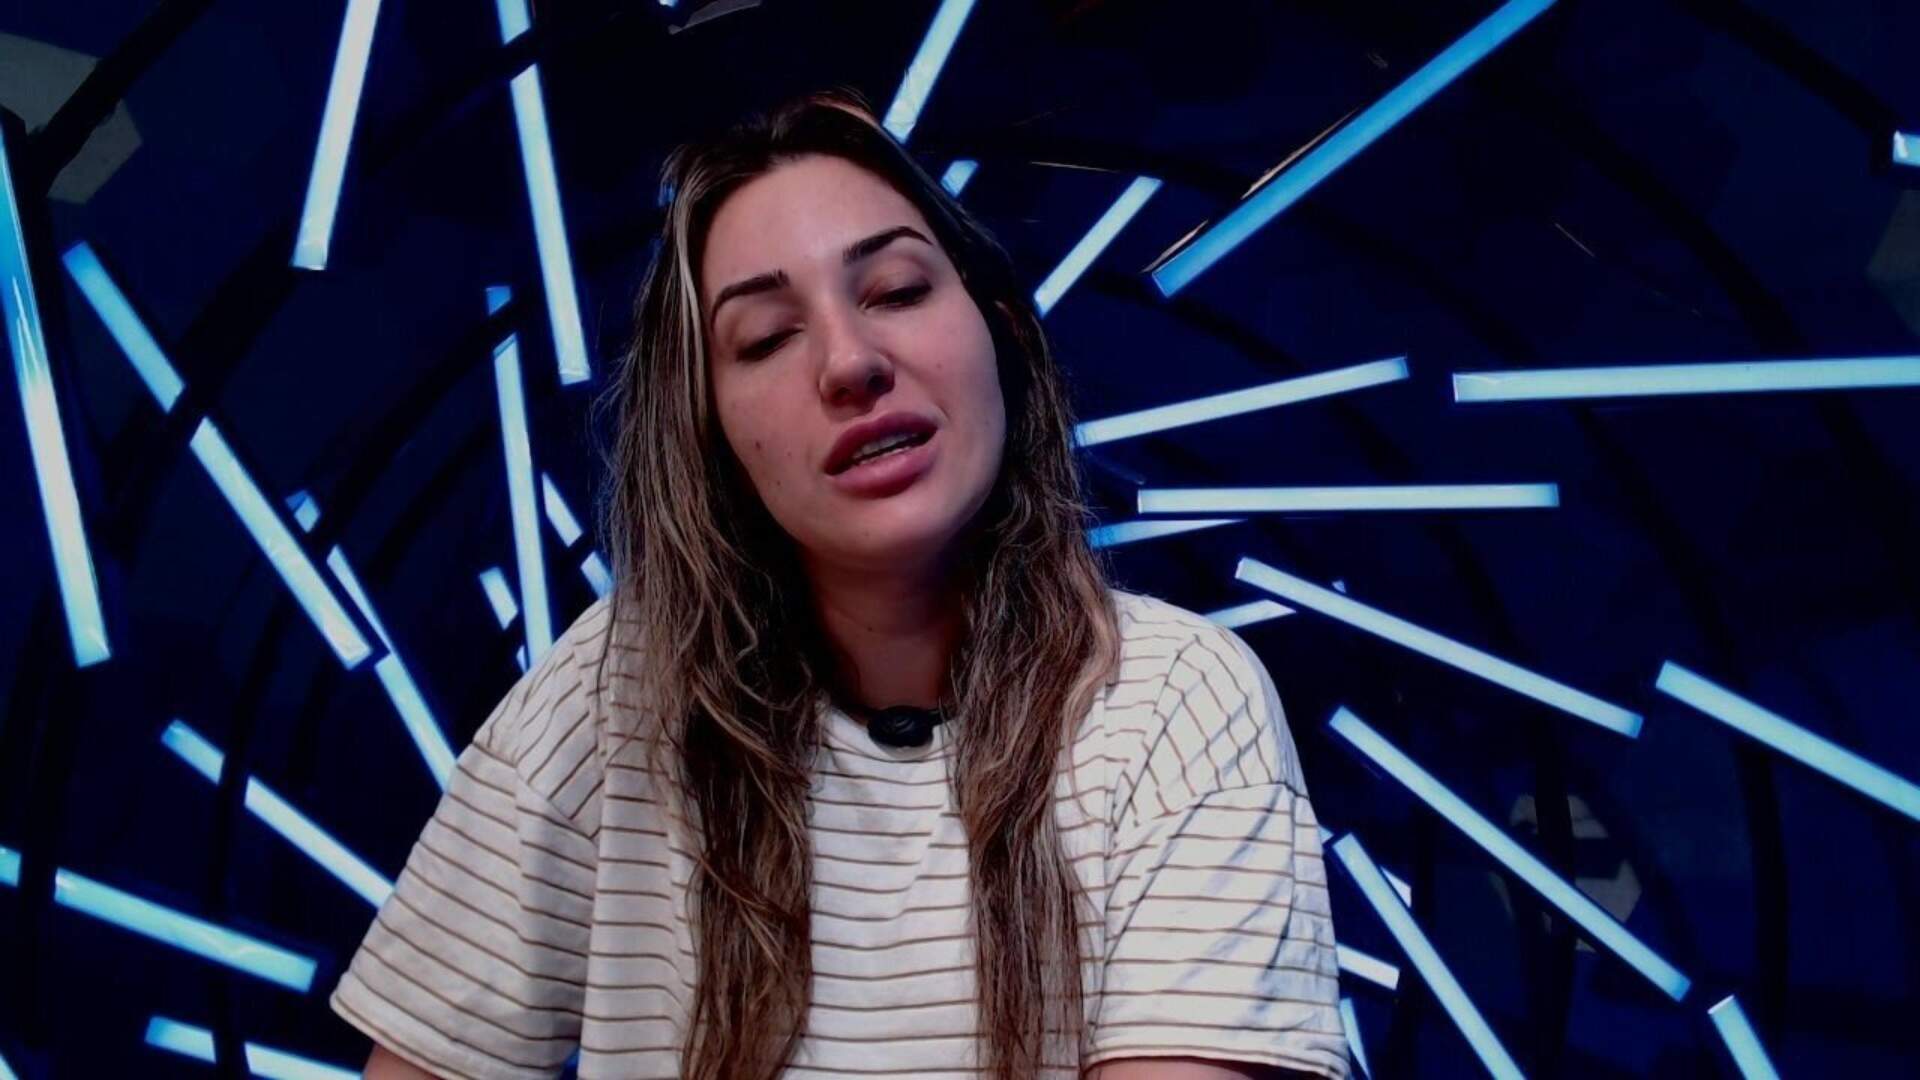 BBB 23: No Raio-X, Amanda Meirelles desabafa sobre paredão: “Vão colocar o meu na reta” - Metropolitana FM